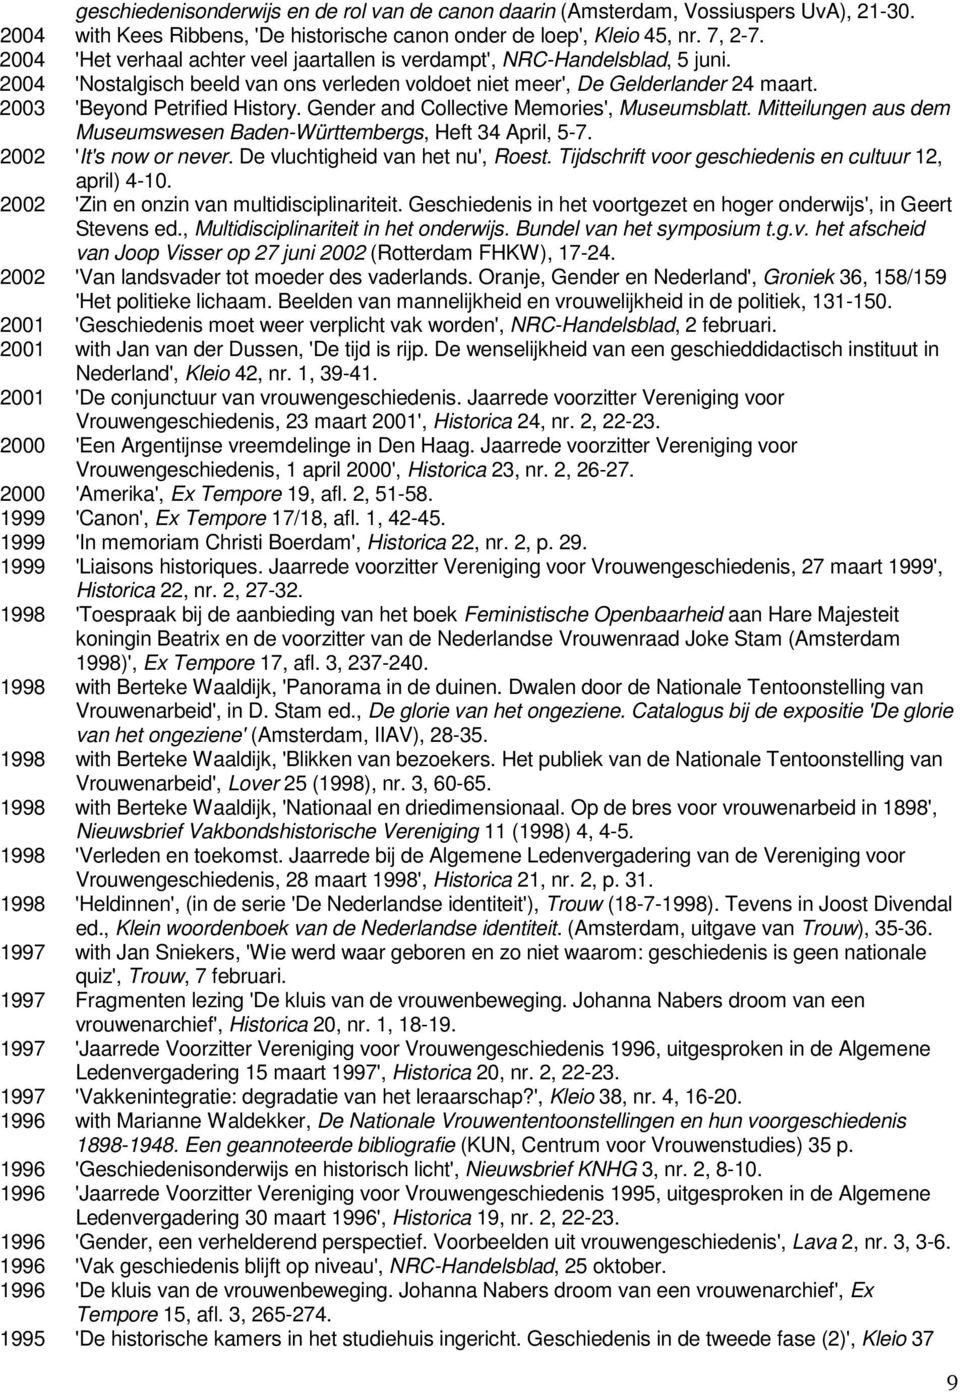 Gender and Collective Memories', Museumsblatt. Mitteilungen aus dem Museumswesen Baden-Württembergs, Heft 34 April, 5-7. 2002 'It's now or never. De vluchtigheid van het nu', Roest.